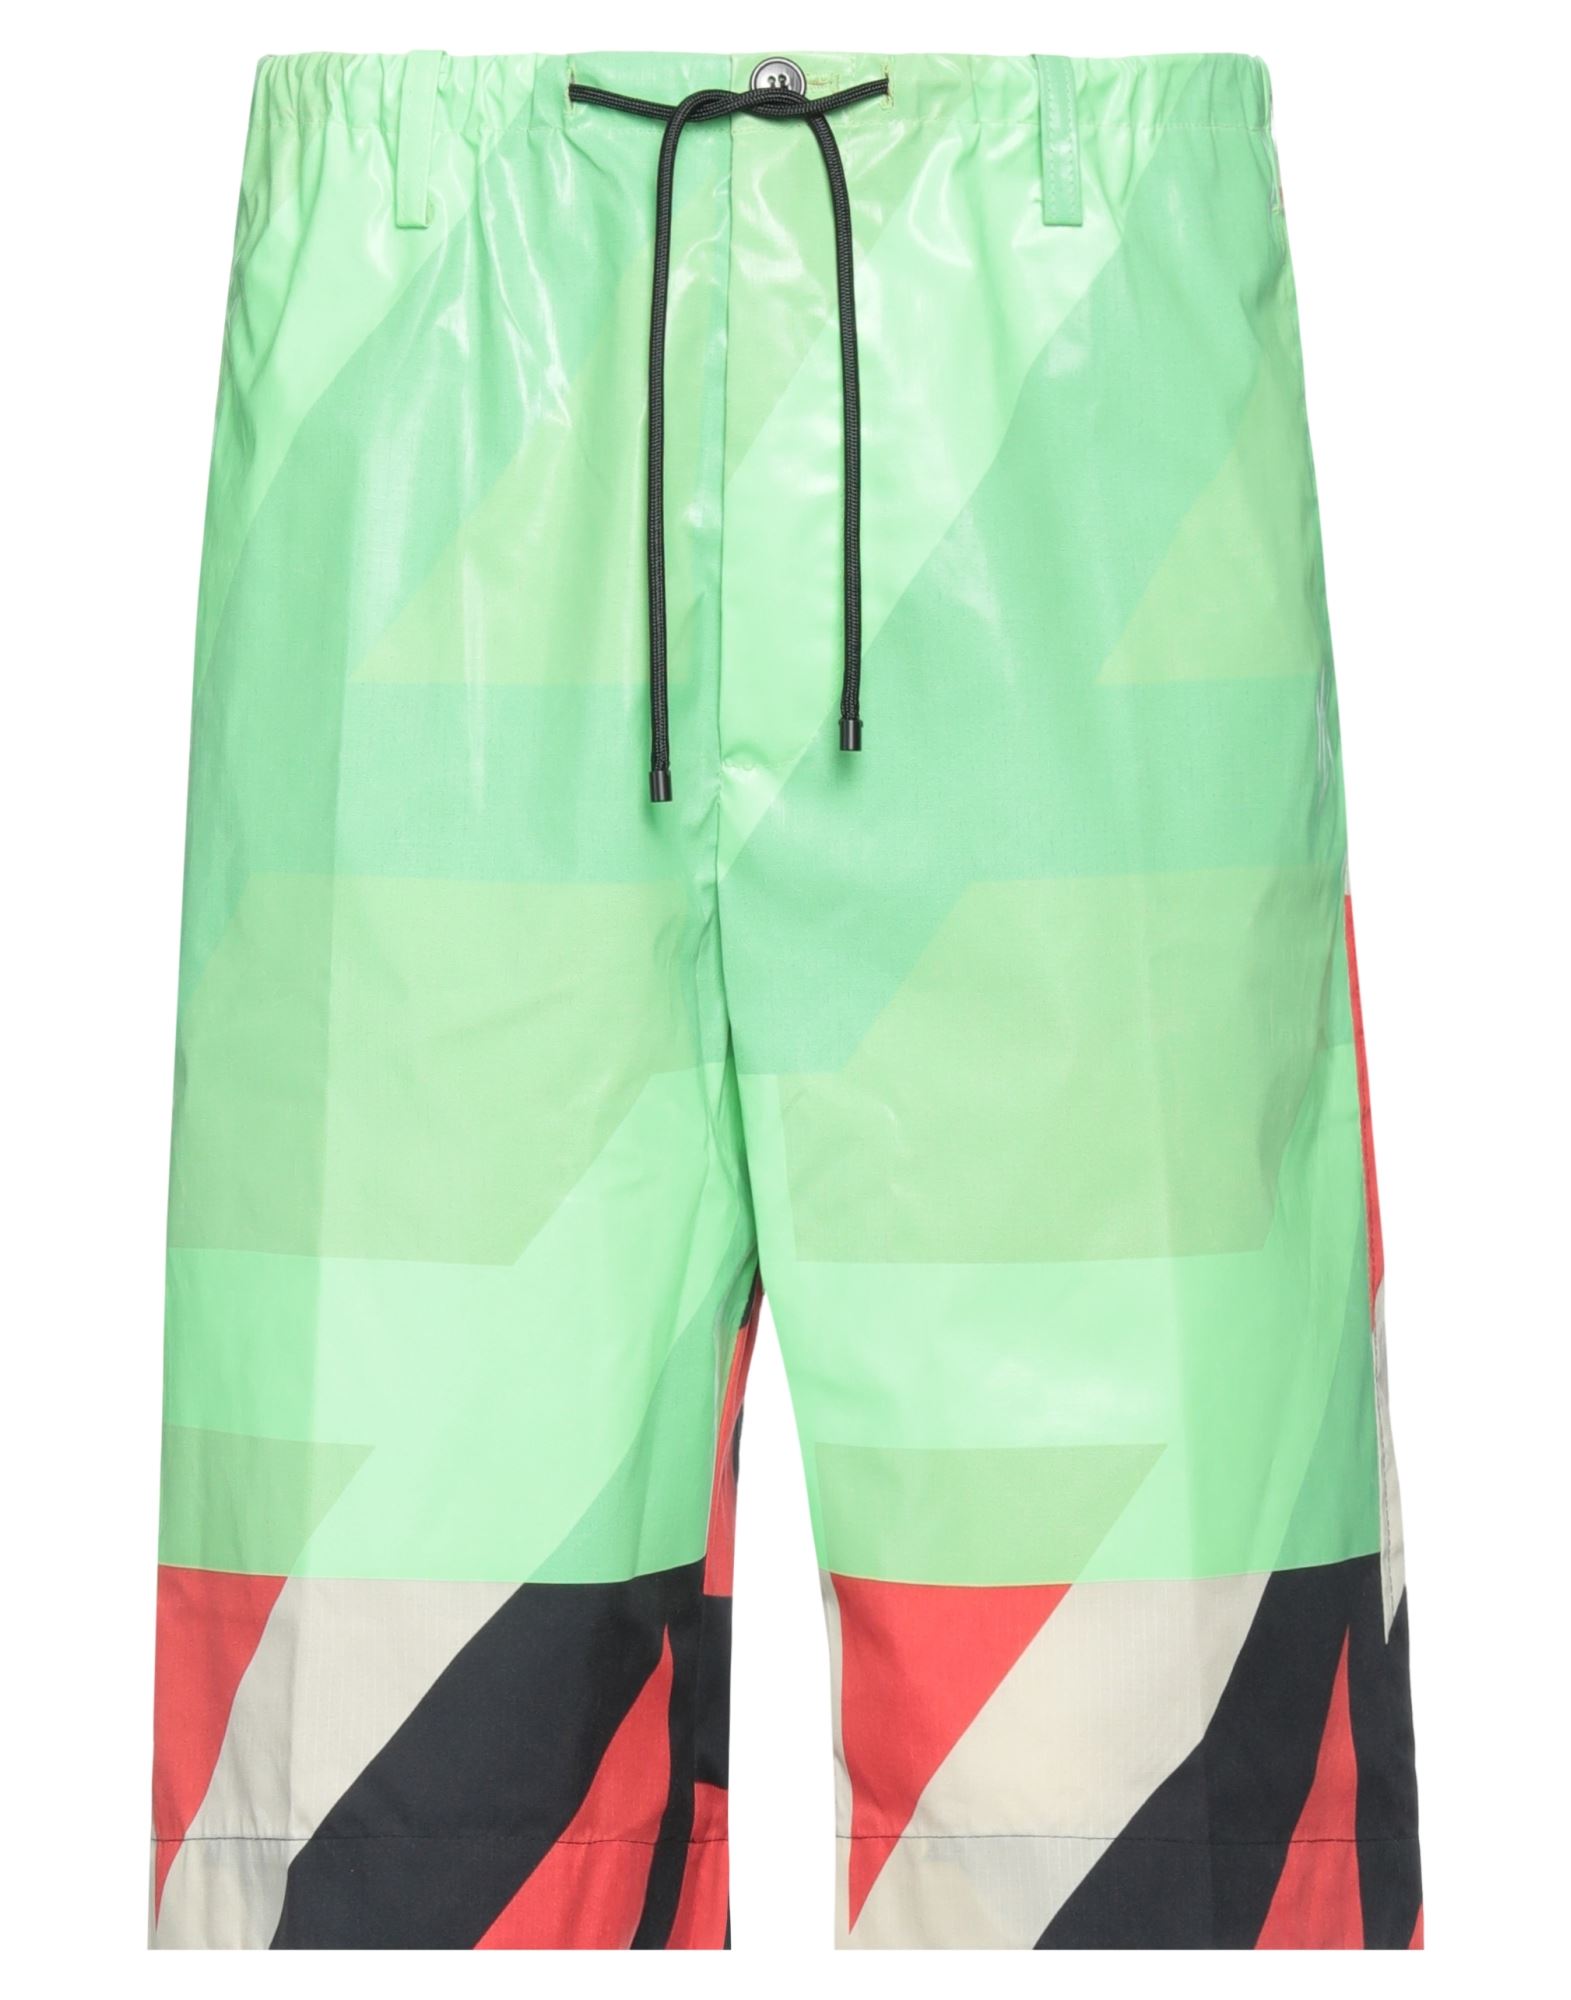 Dries Van Noten Man Shorts & Bermuda Shorts Light Green Size 32 Polyamide